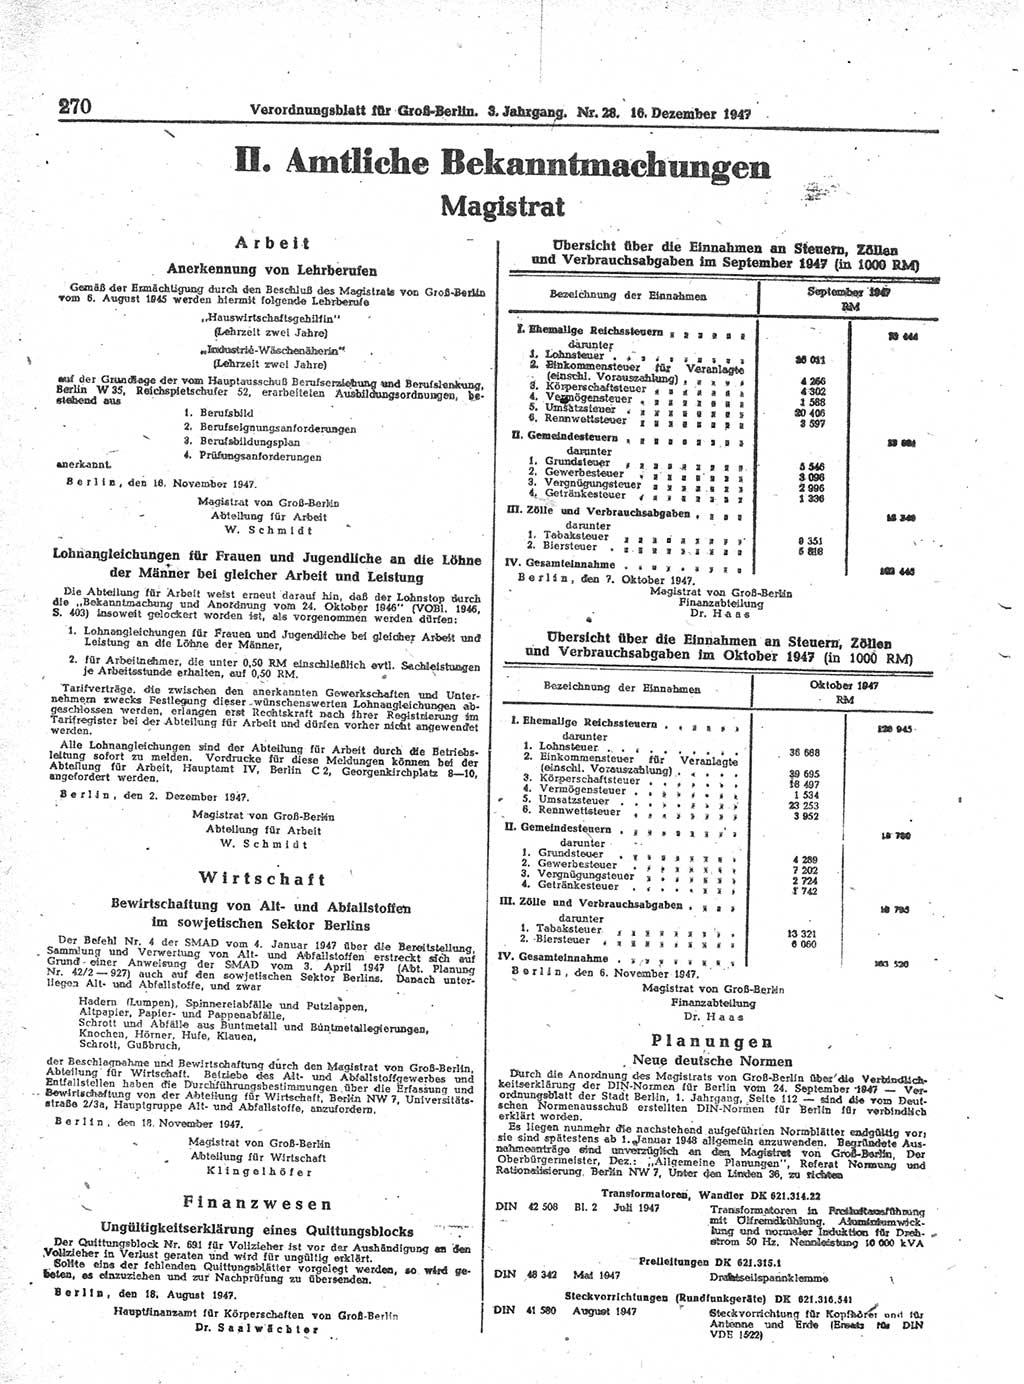 Verordnungsblatt (VOBl.) für Groß-Berlin 1947, Seite 270 (VOBl. Bln. 1947, S. 270)